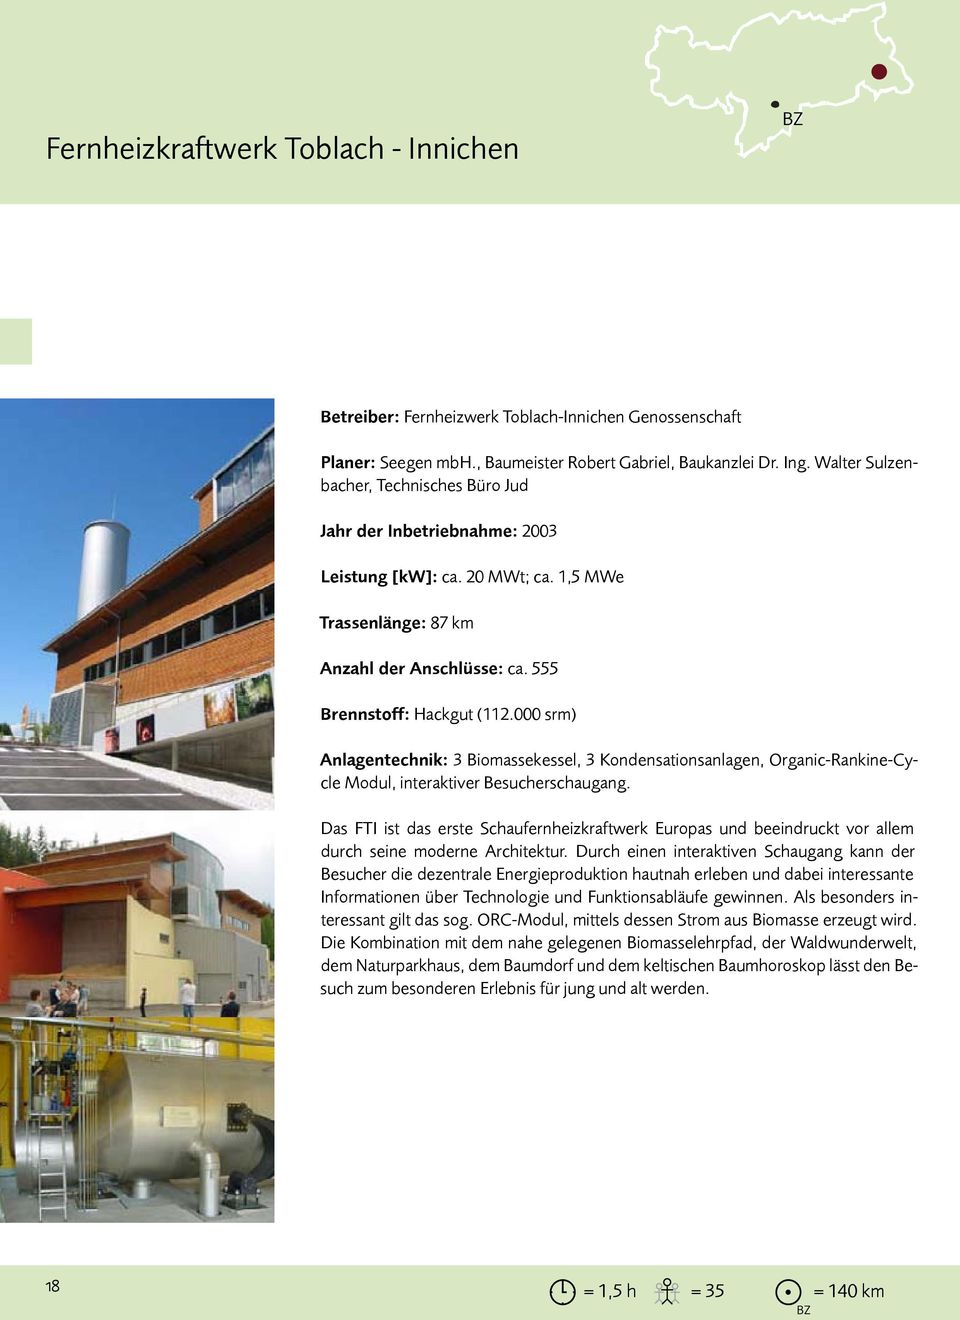 000 srm) Anlagentechnik: 3 Biomassekessel, 3 Kondensationsanlagen, Organic-Rankine-Cycle Modul, interaktiver Besucherschaugang.